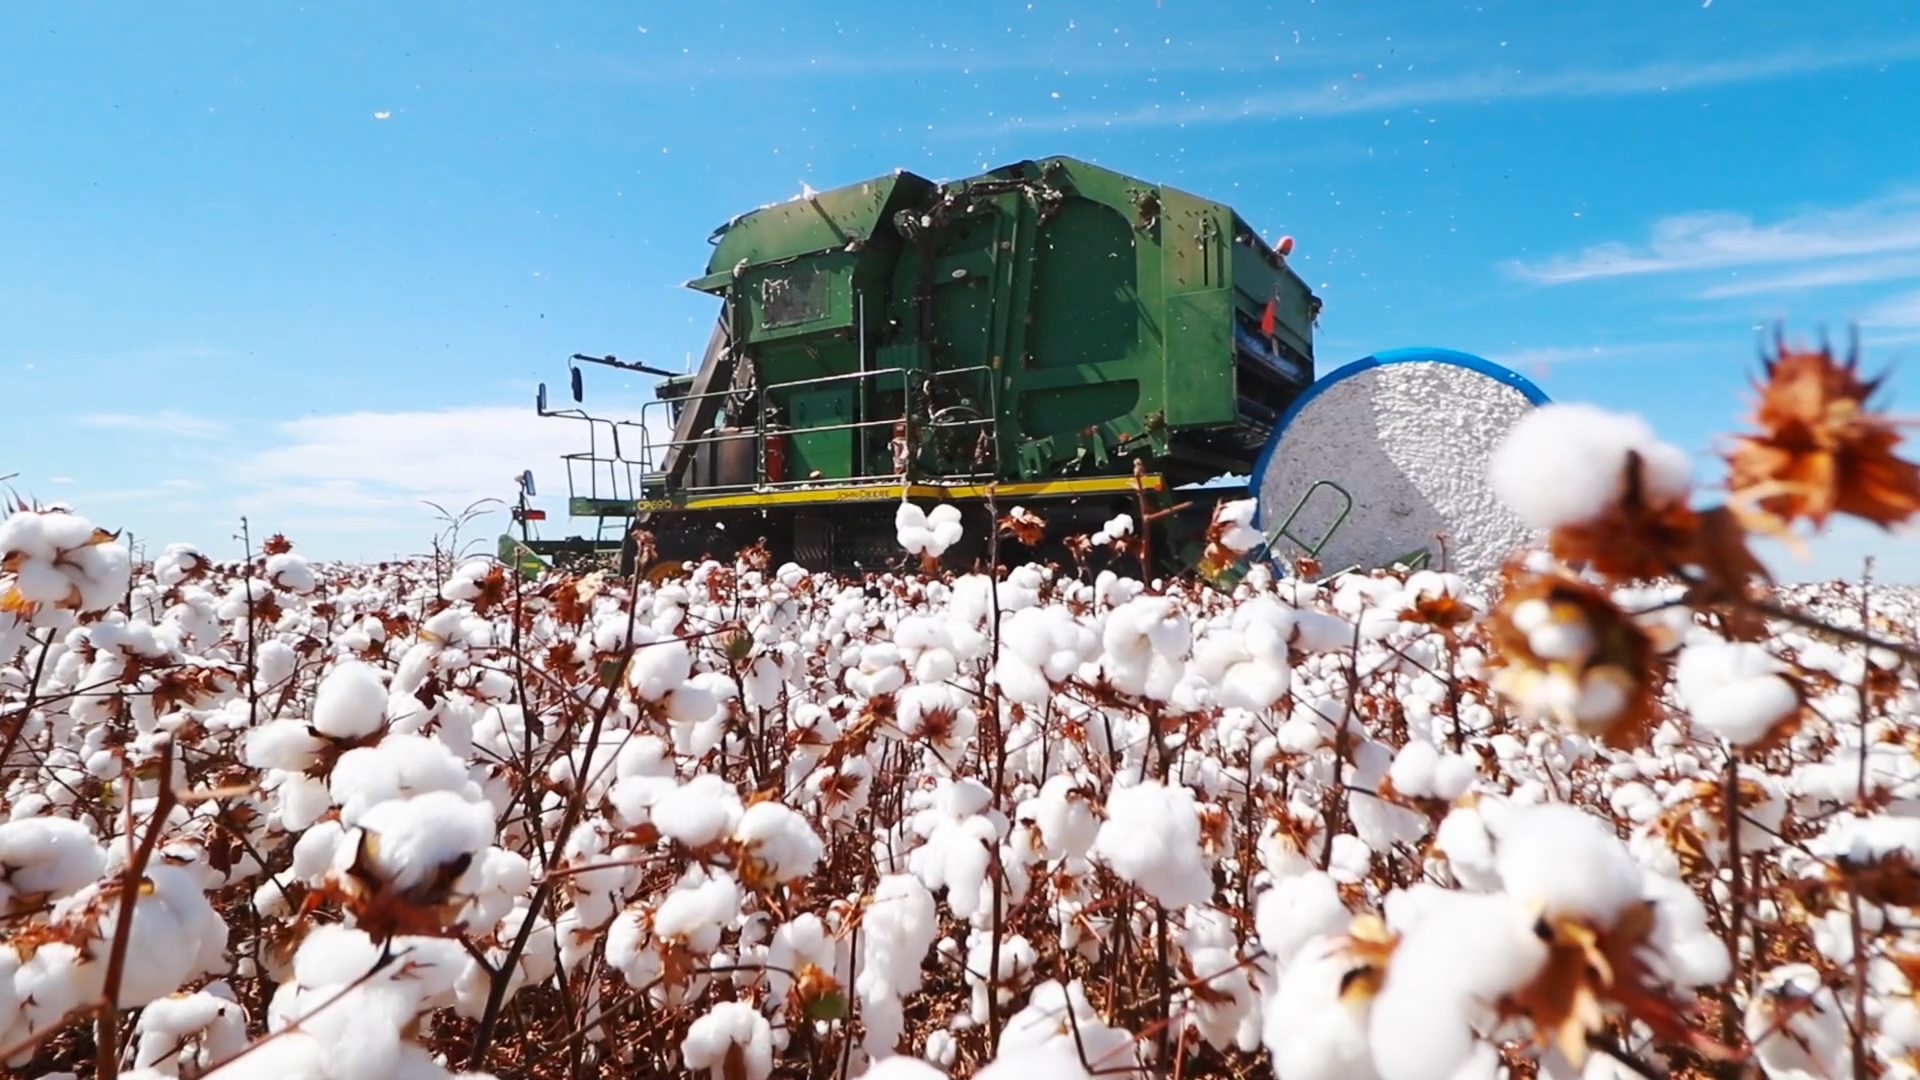 Colheita do algodão mostra alta produtividade e anima mercado